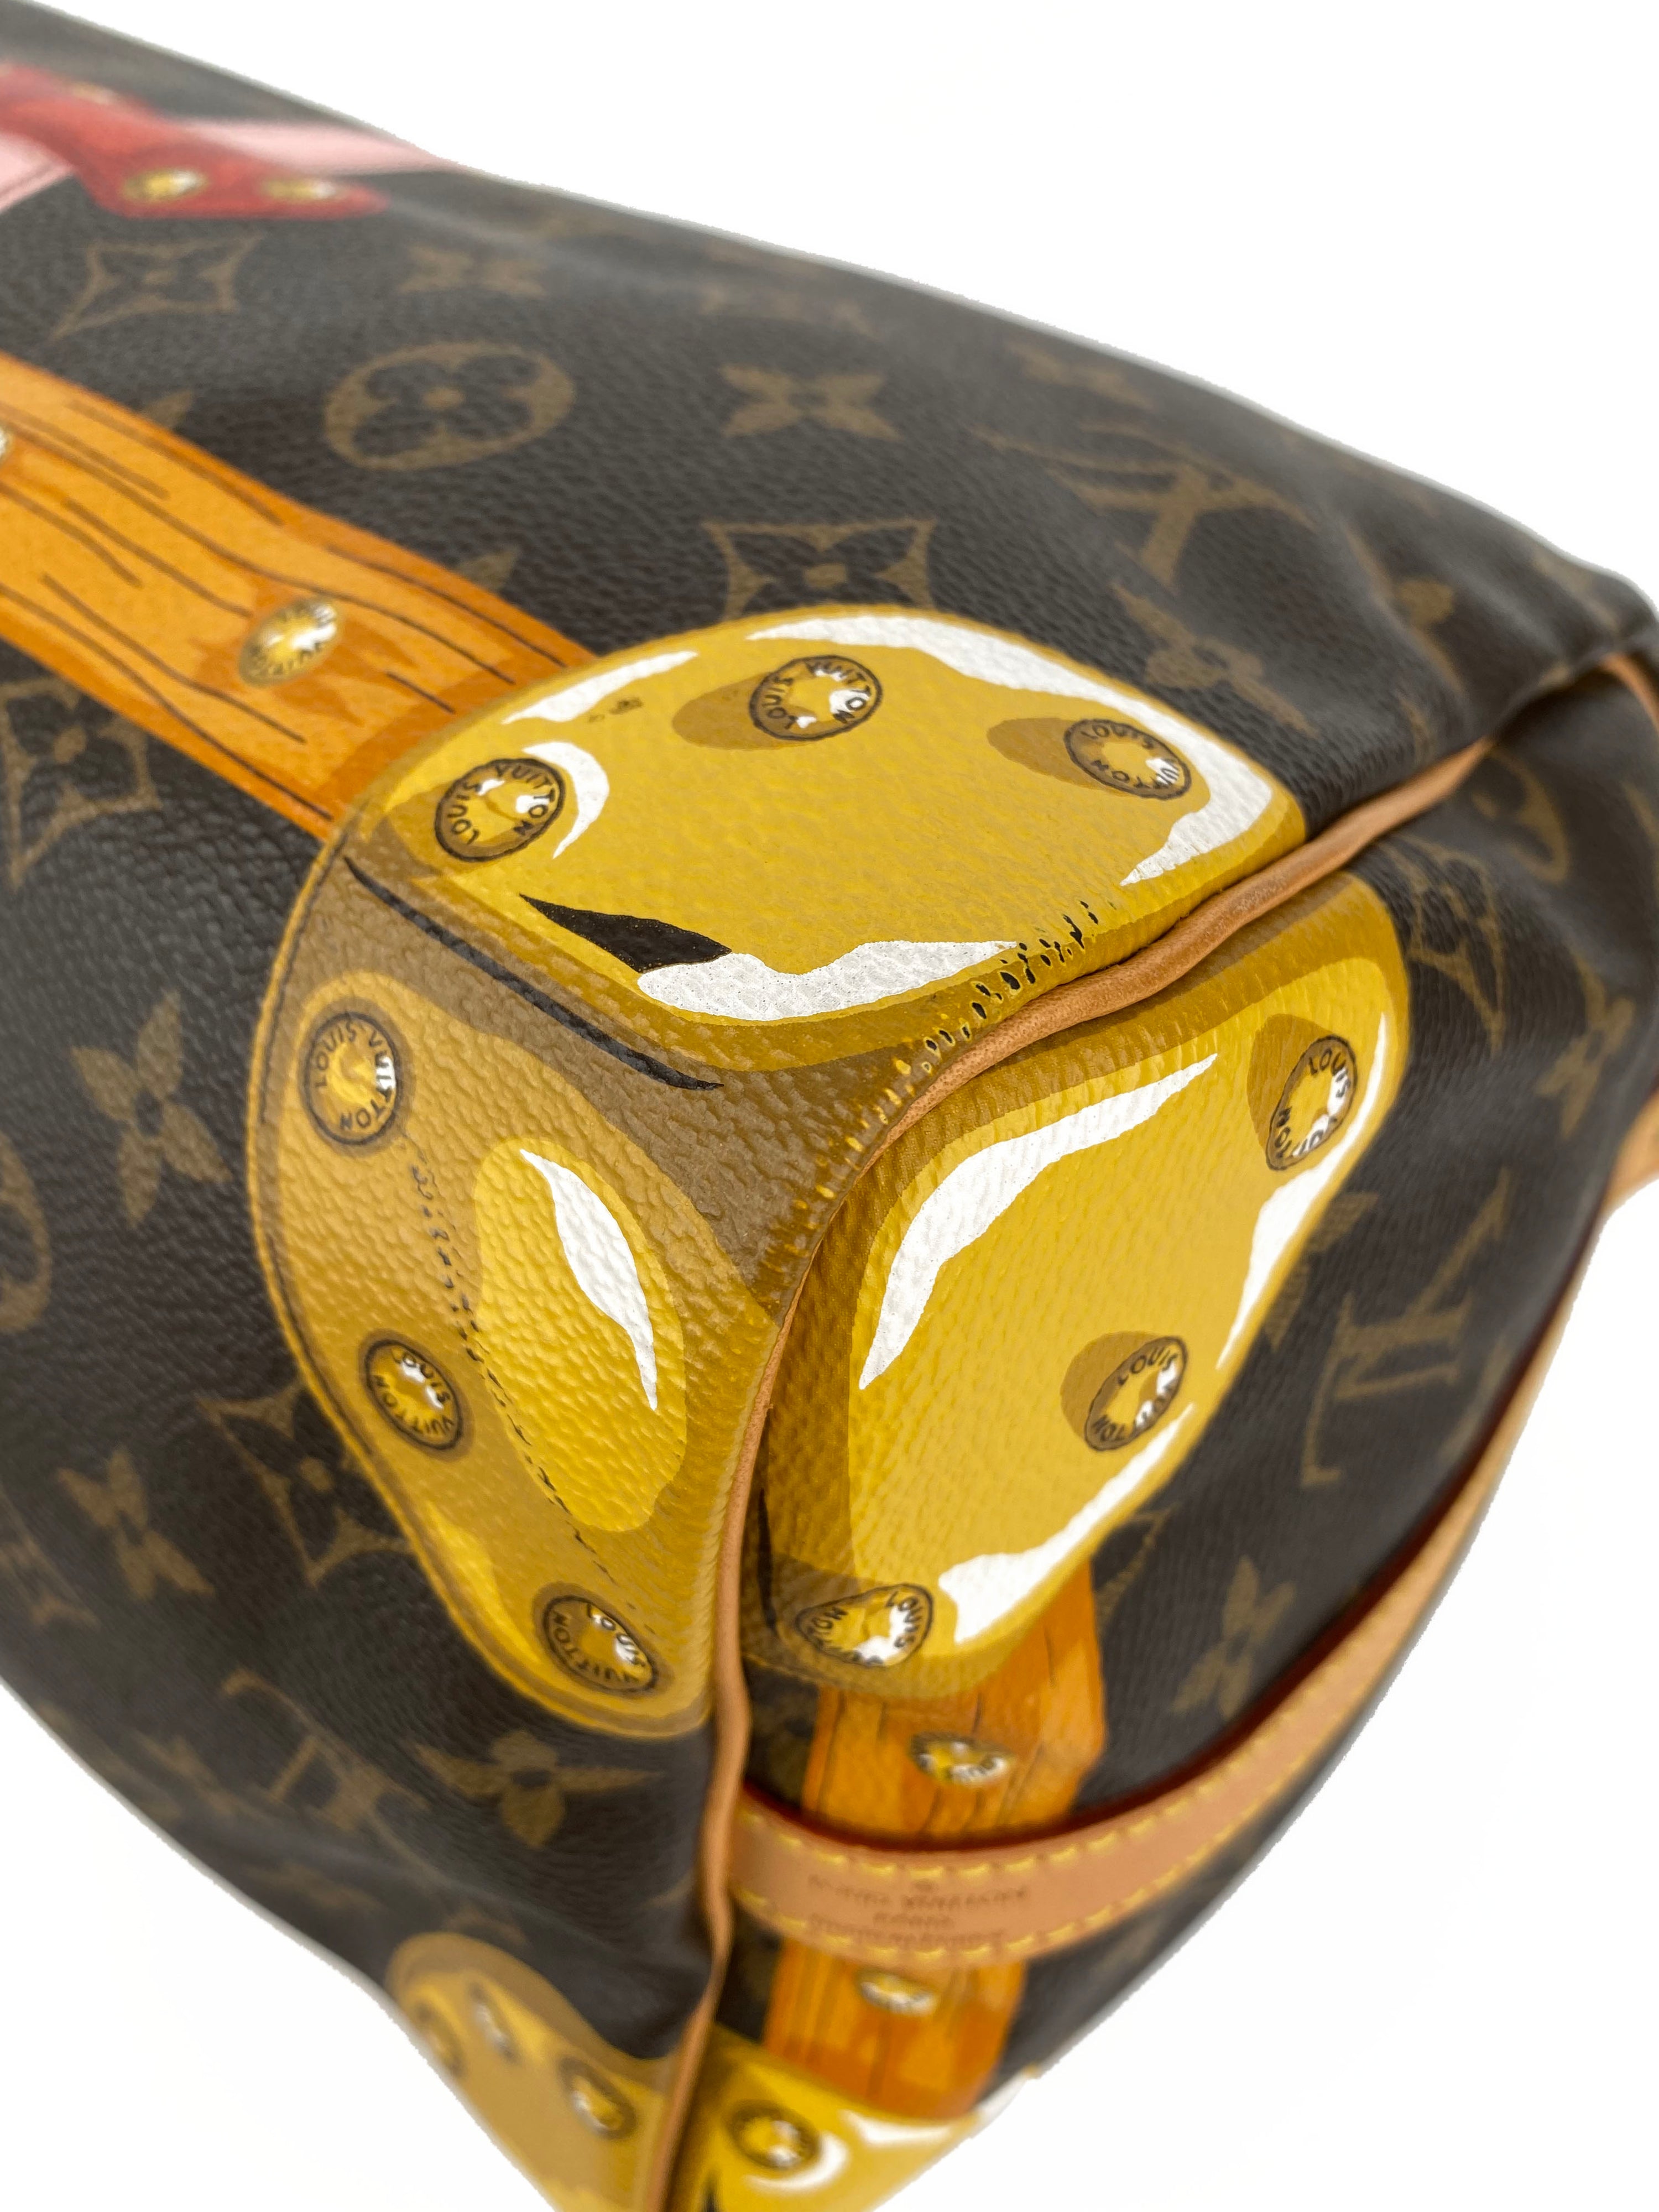 Louis Vuitton Summer Trunks Speedy 30 Bandouliere Bag